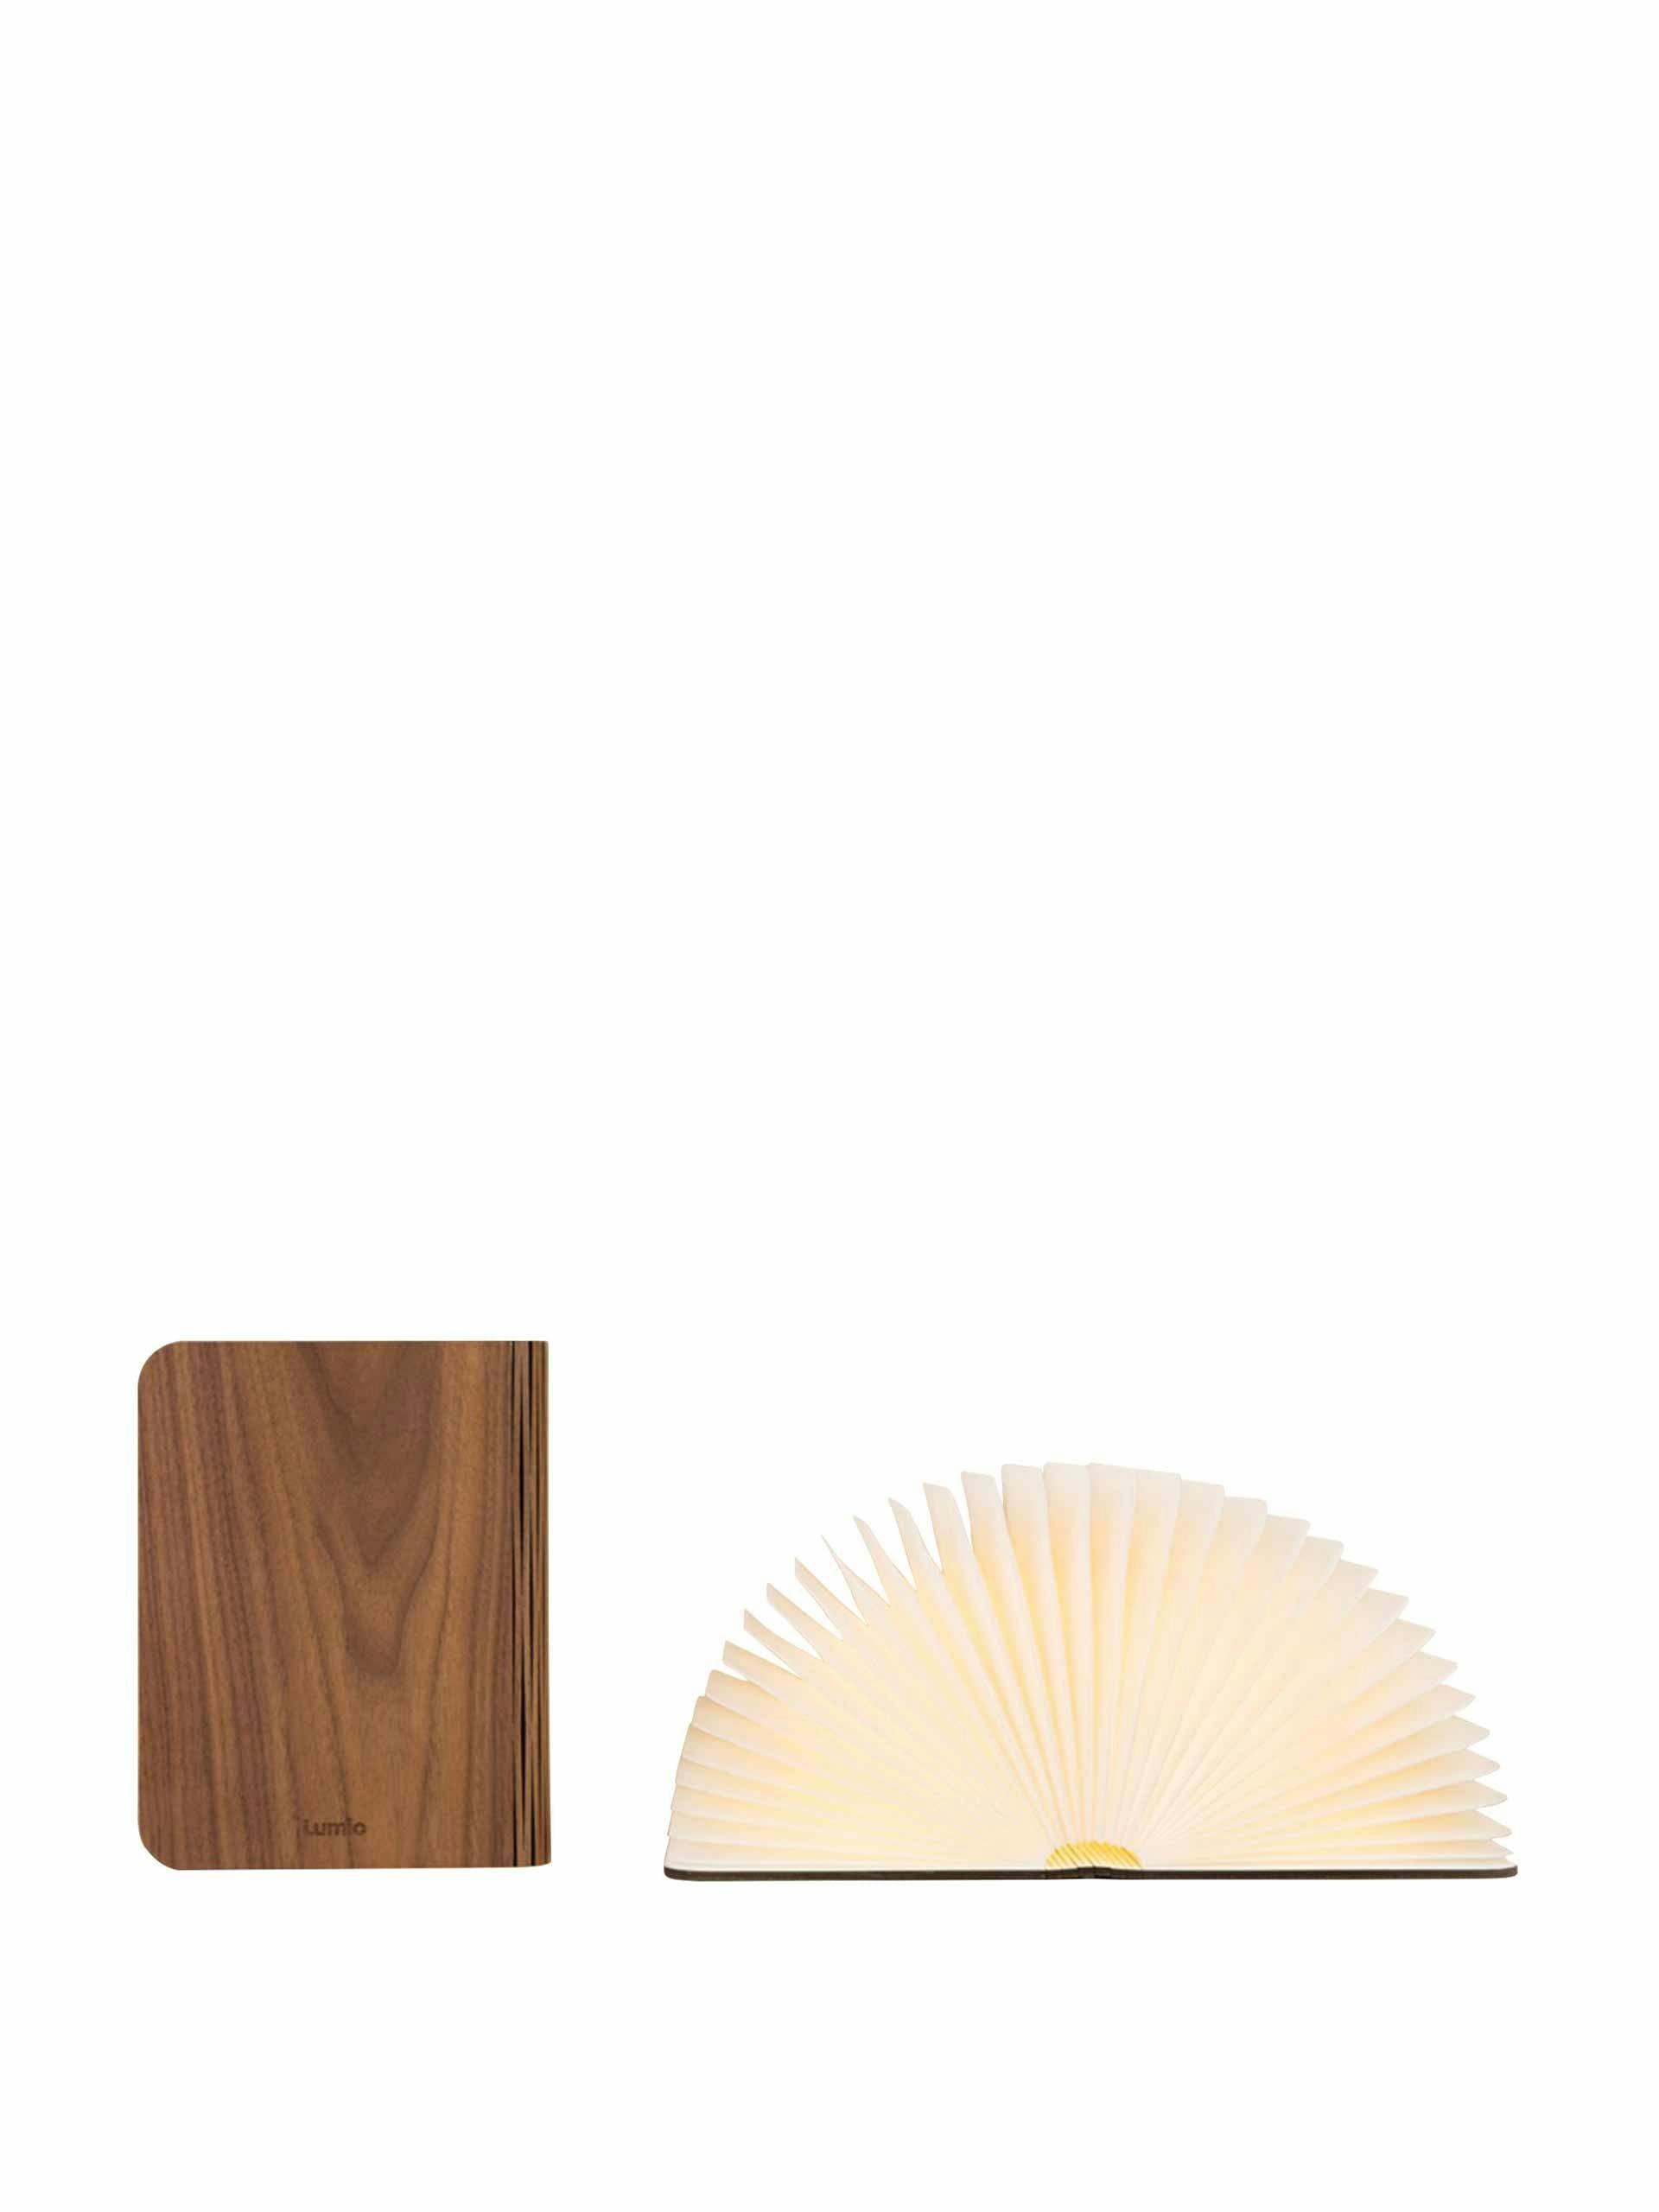 Wood book lamp